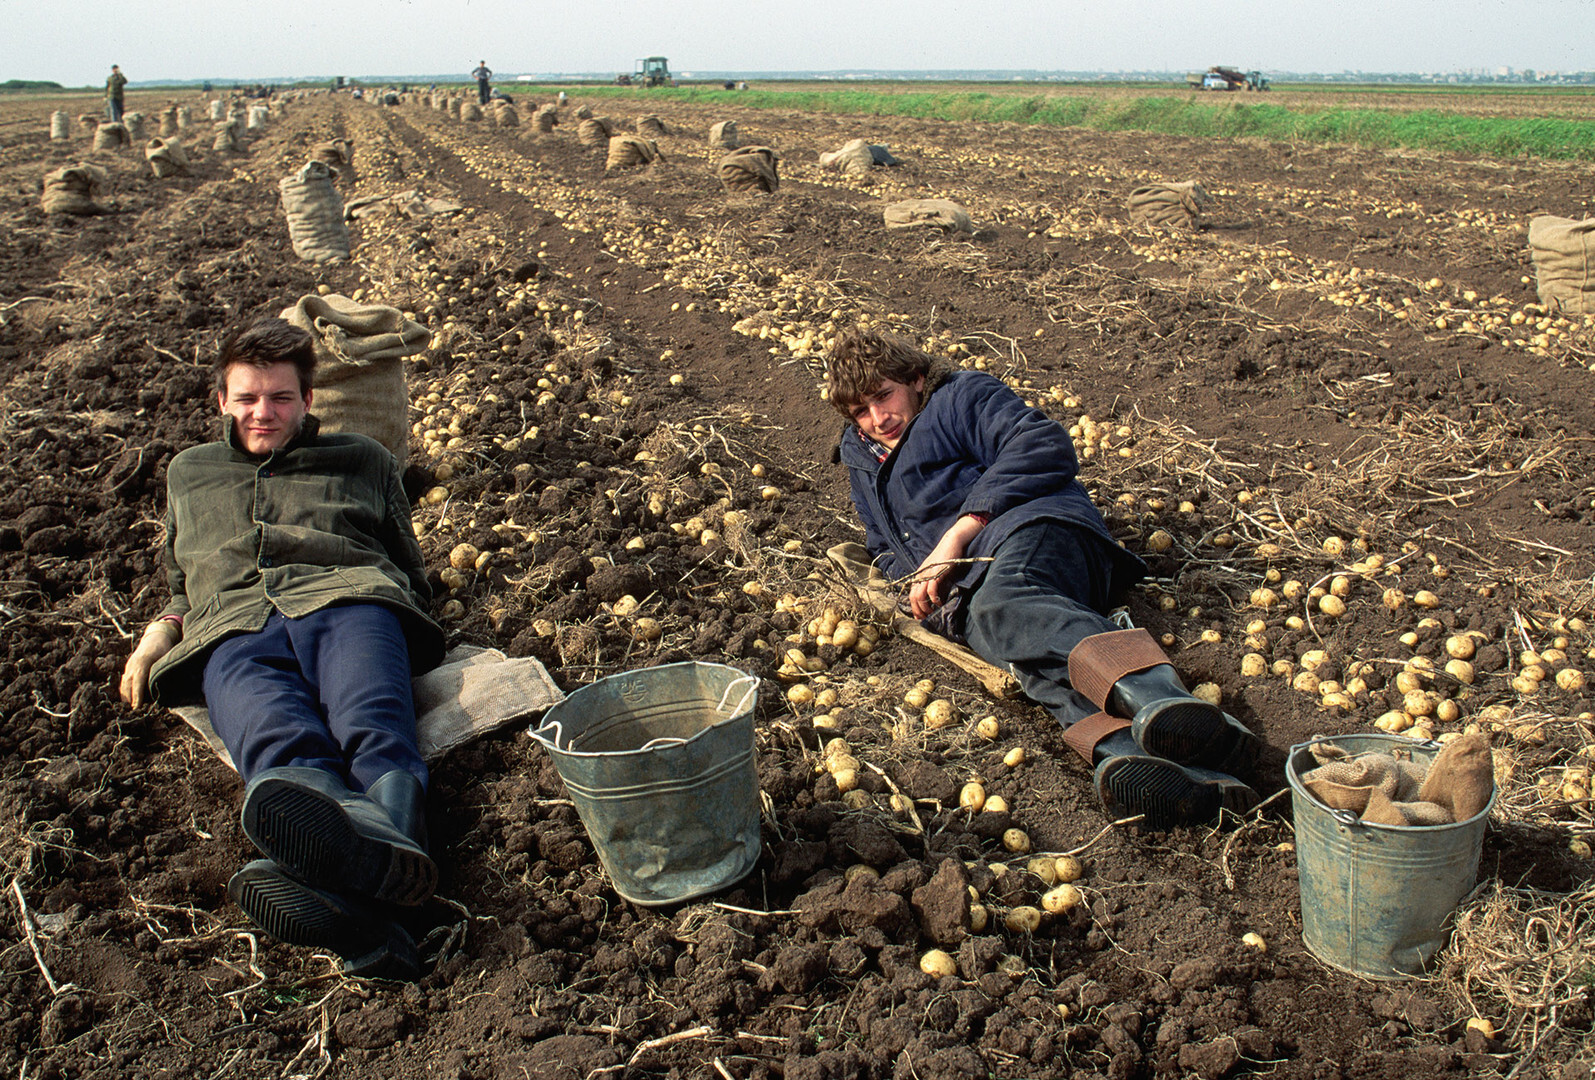 Recolectores de patatas descansando en una granja colectiva.